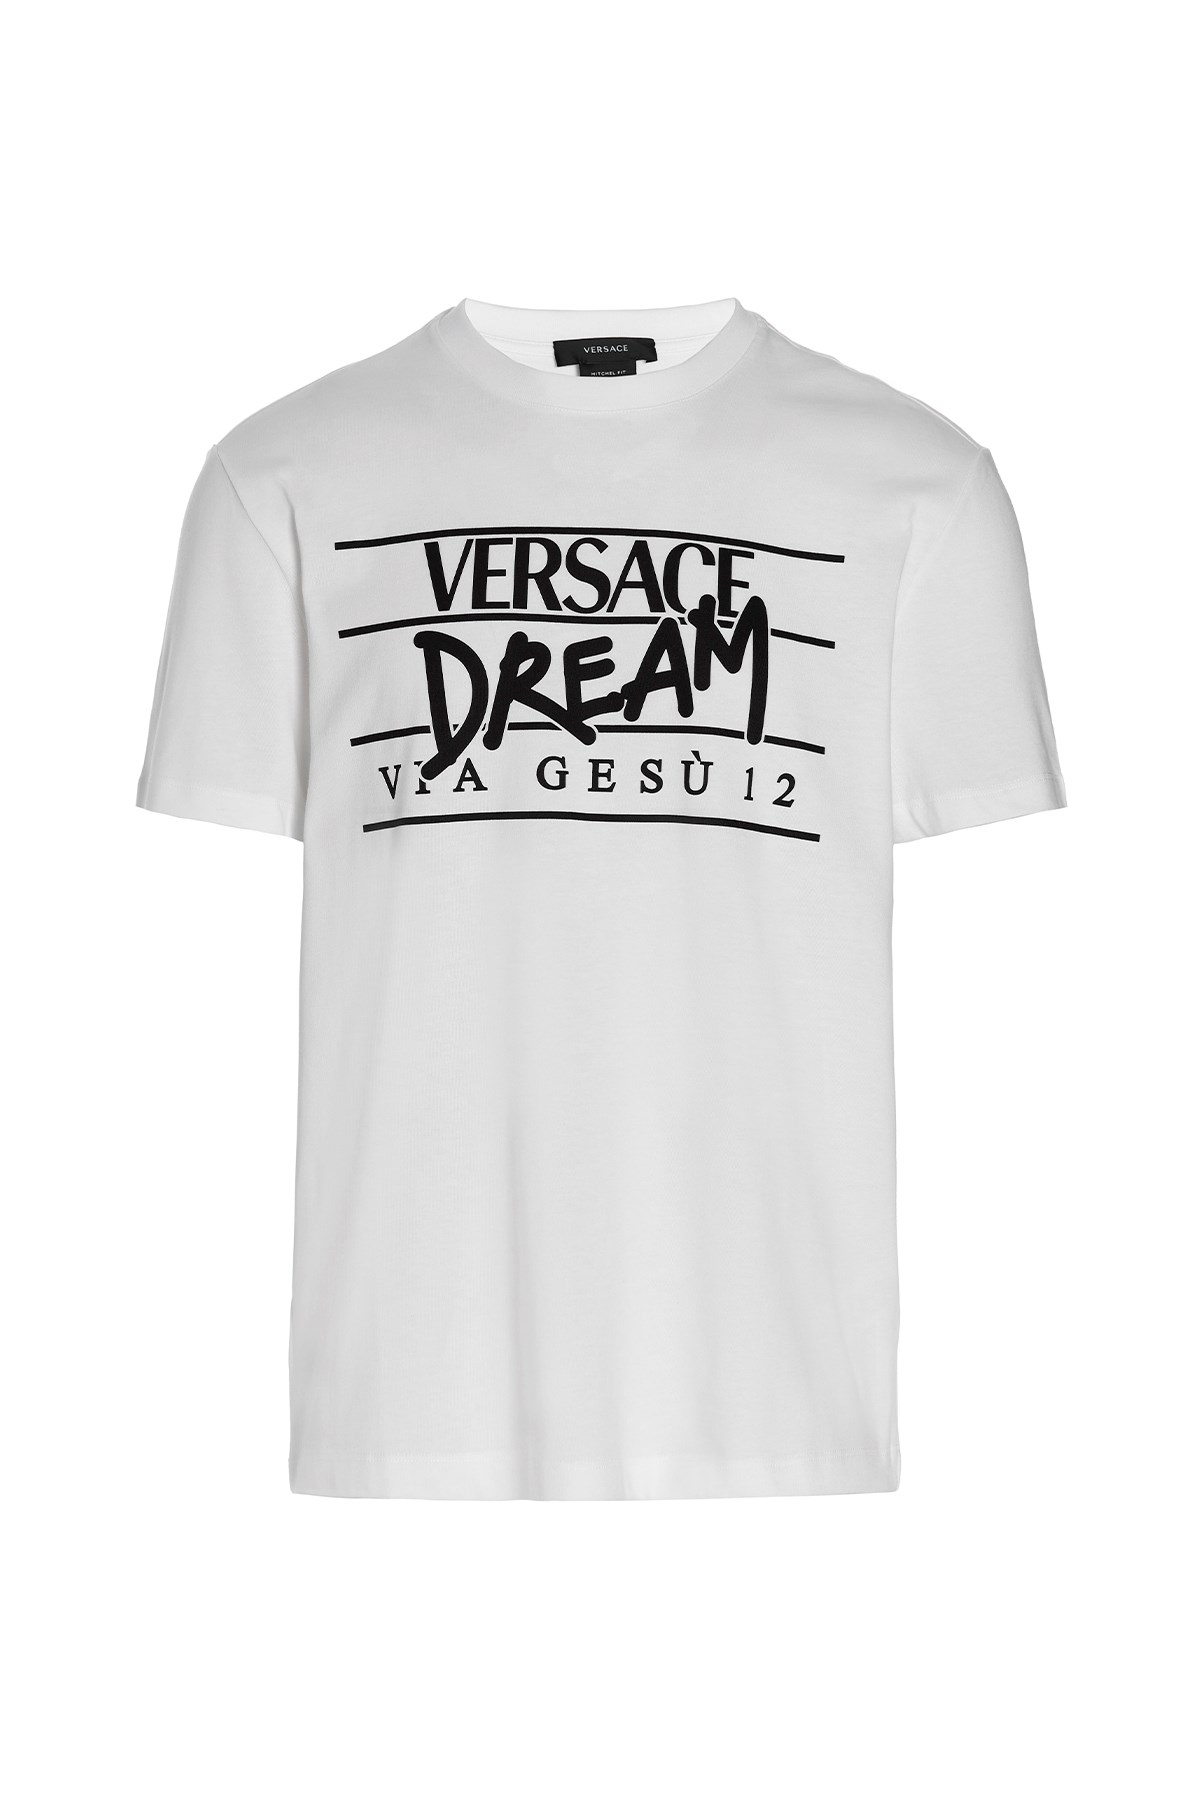 VERSACE T-Shirt 'Dream'